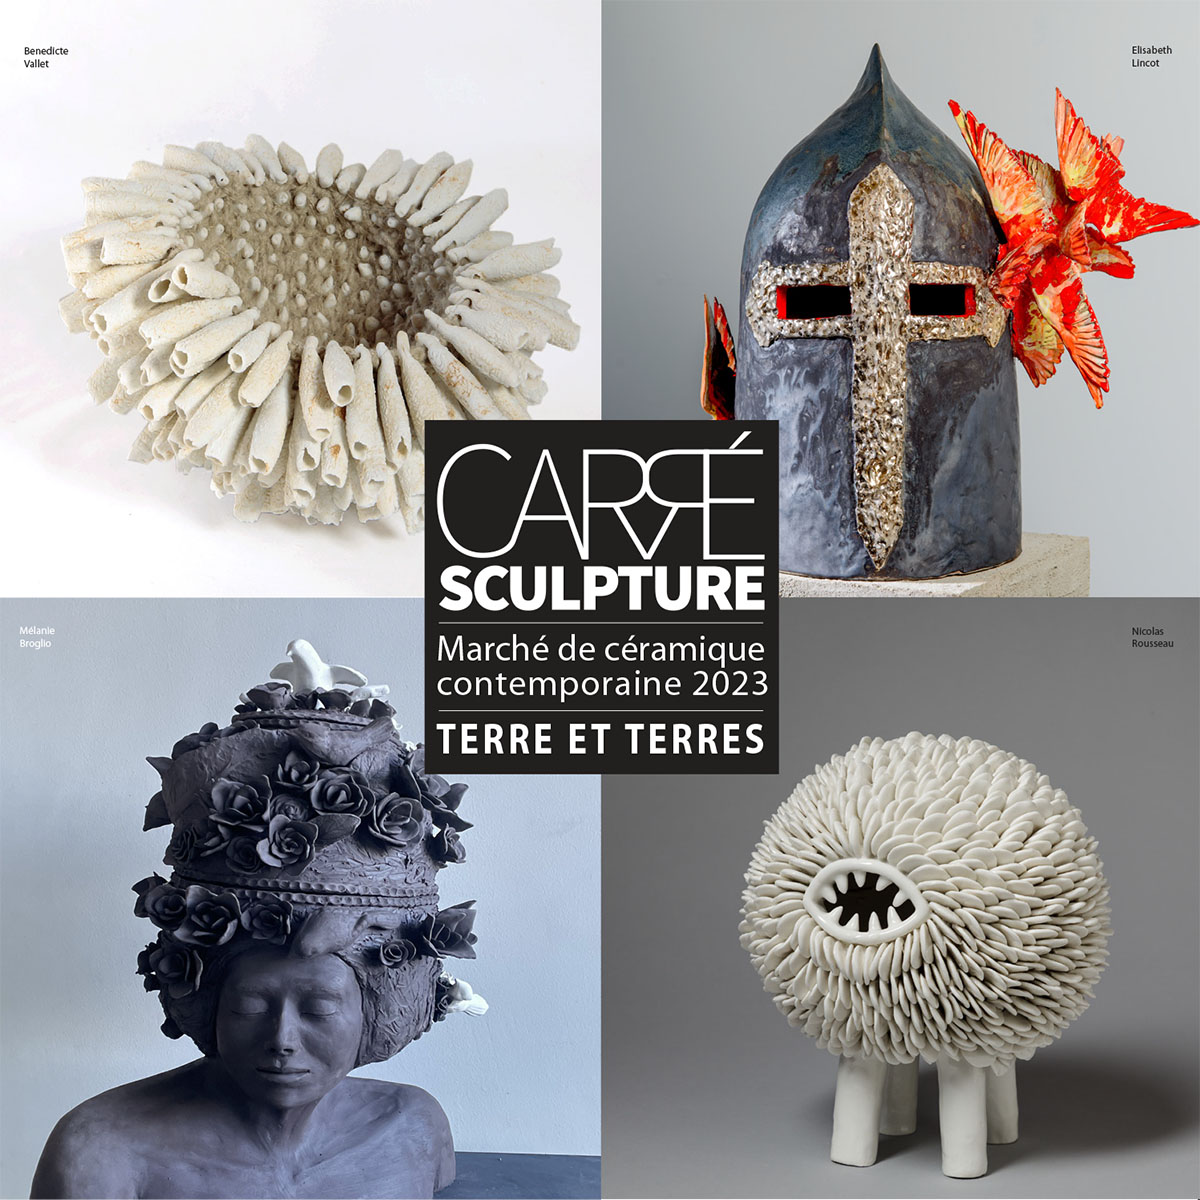 Carré Sculpture - Marché céramique Contemporaine Giroussens 2023